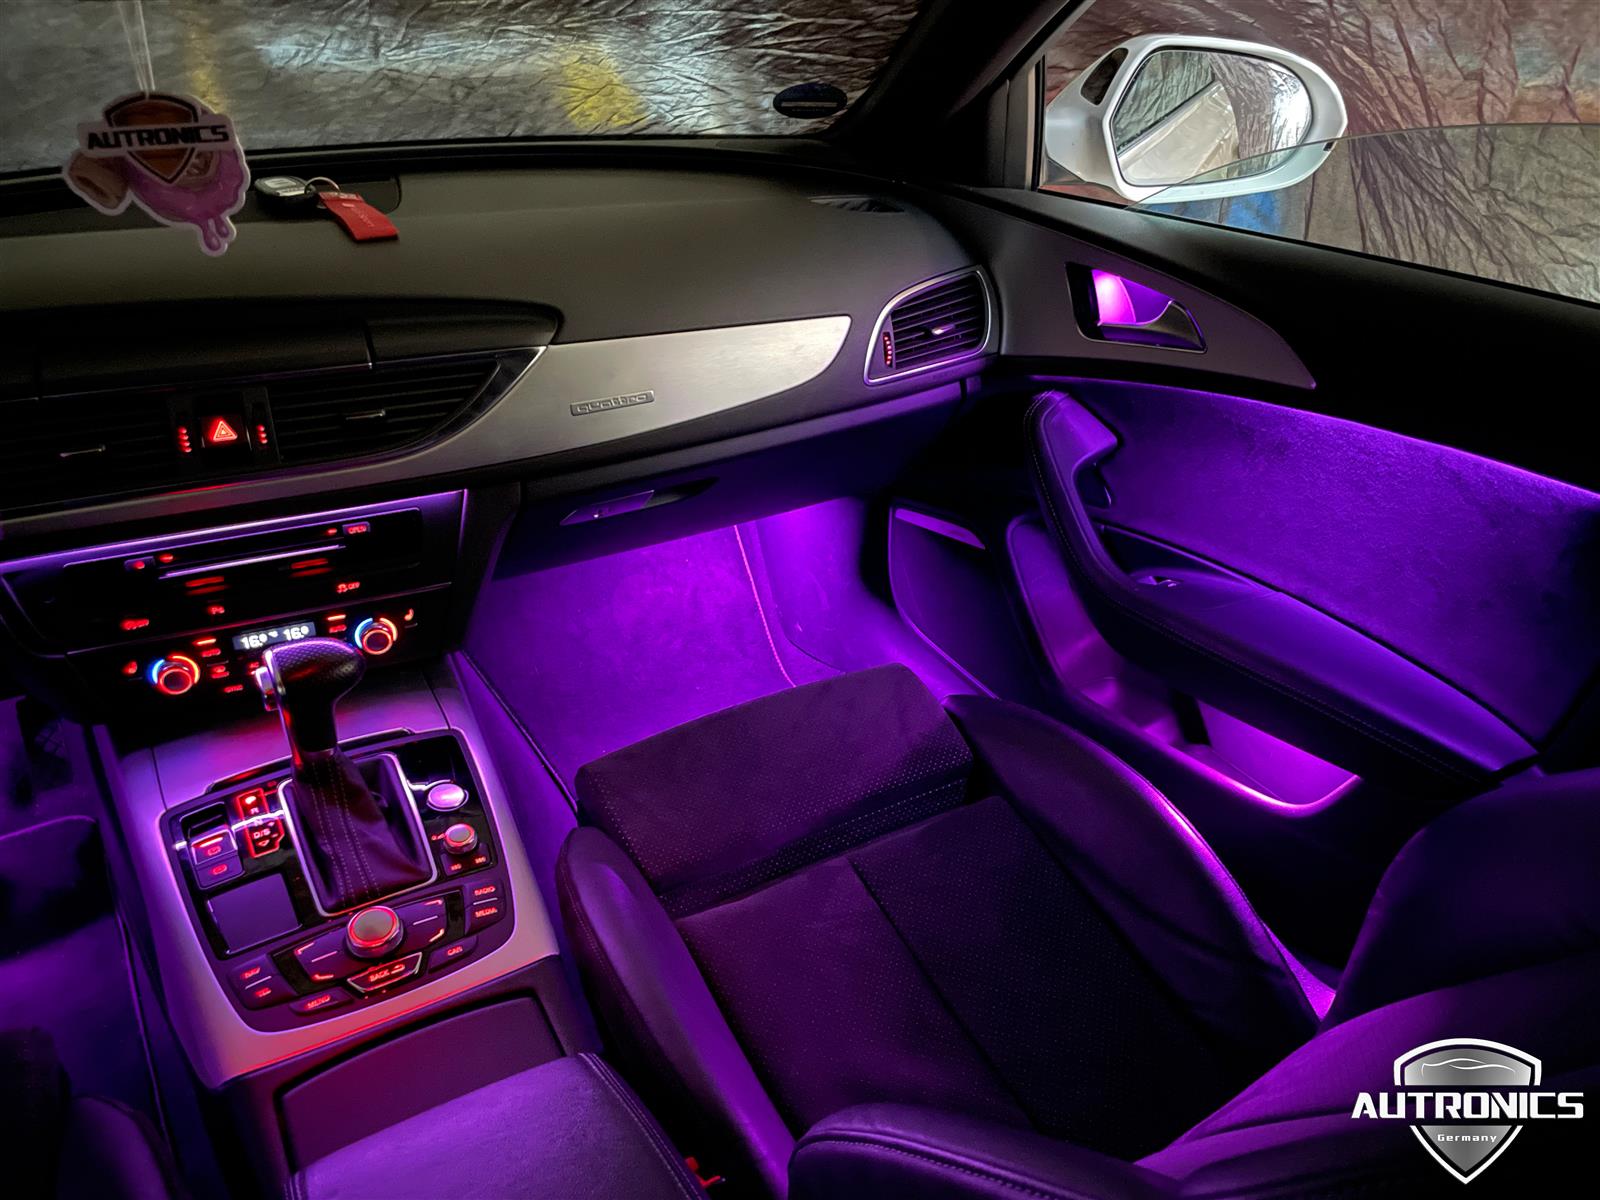 Ambientebeleuchtung Nachrüsten im Auto Beleuchtung LED Ambiente geeignet für Audi A6 A7 (4G C7) - 02